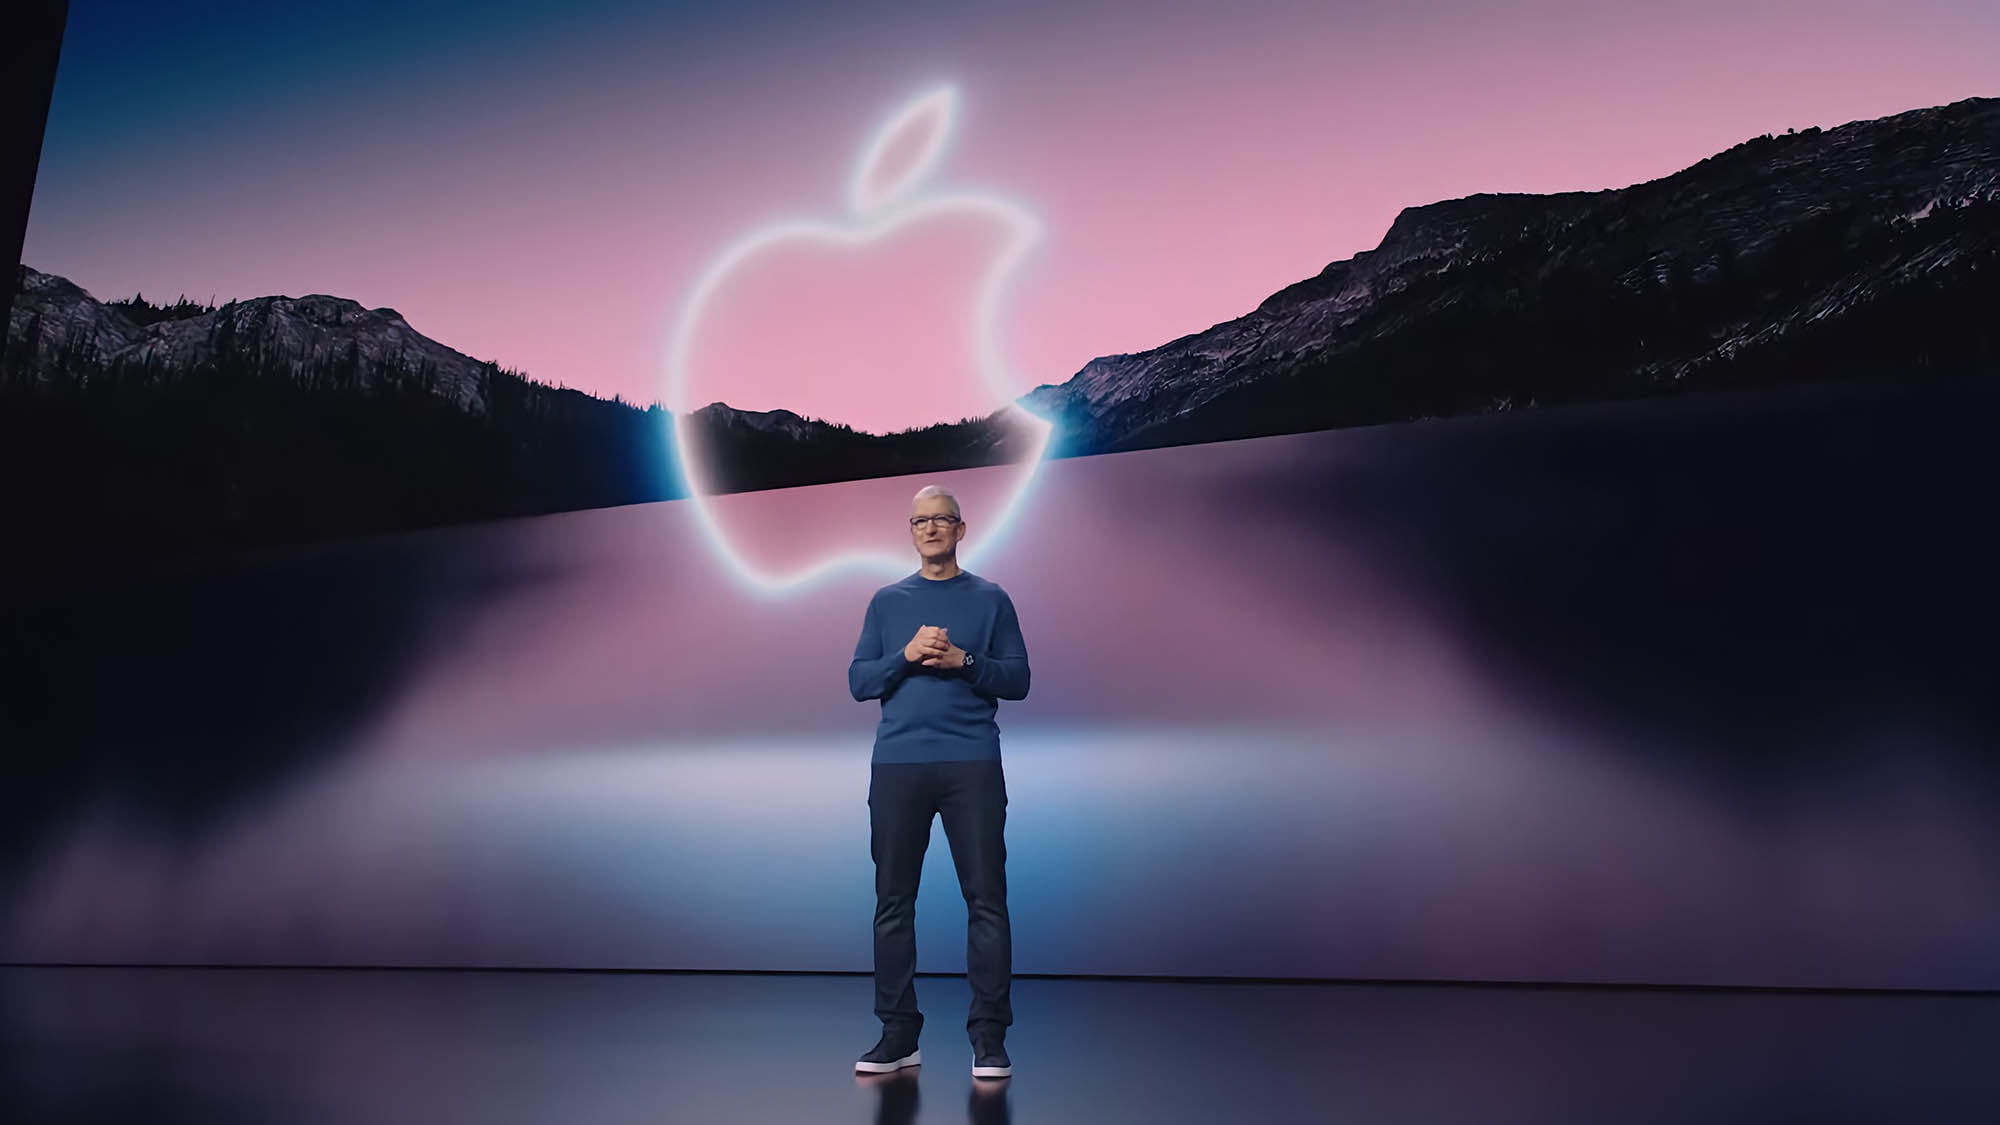 Vén màn sản phẩm Apple sẽ trình làng tại sự kiện WWDC 2022, hấp dẫn chẳng kém iPhone 14? - Ảnh 4.